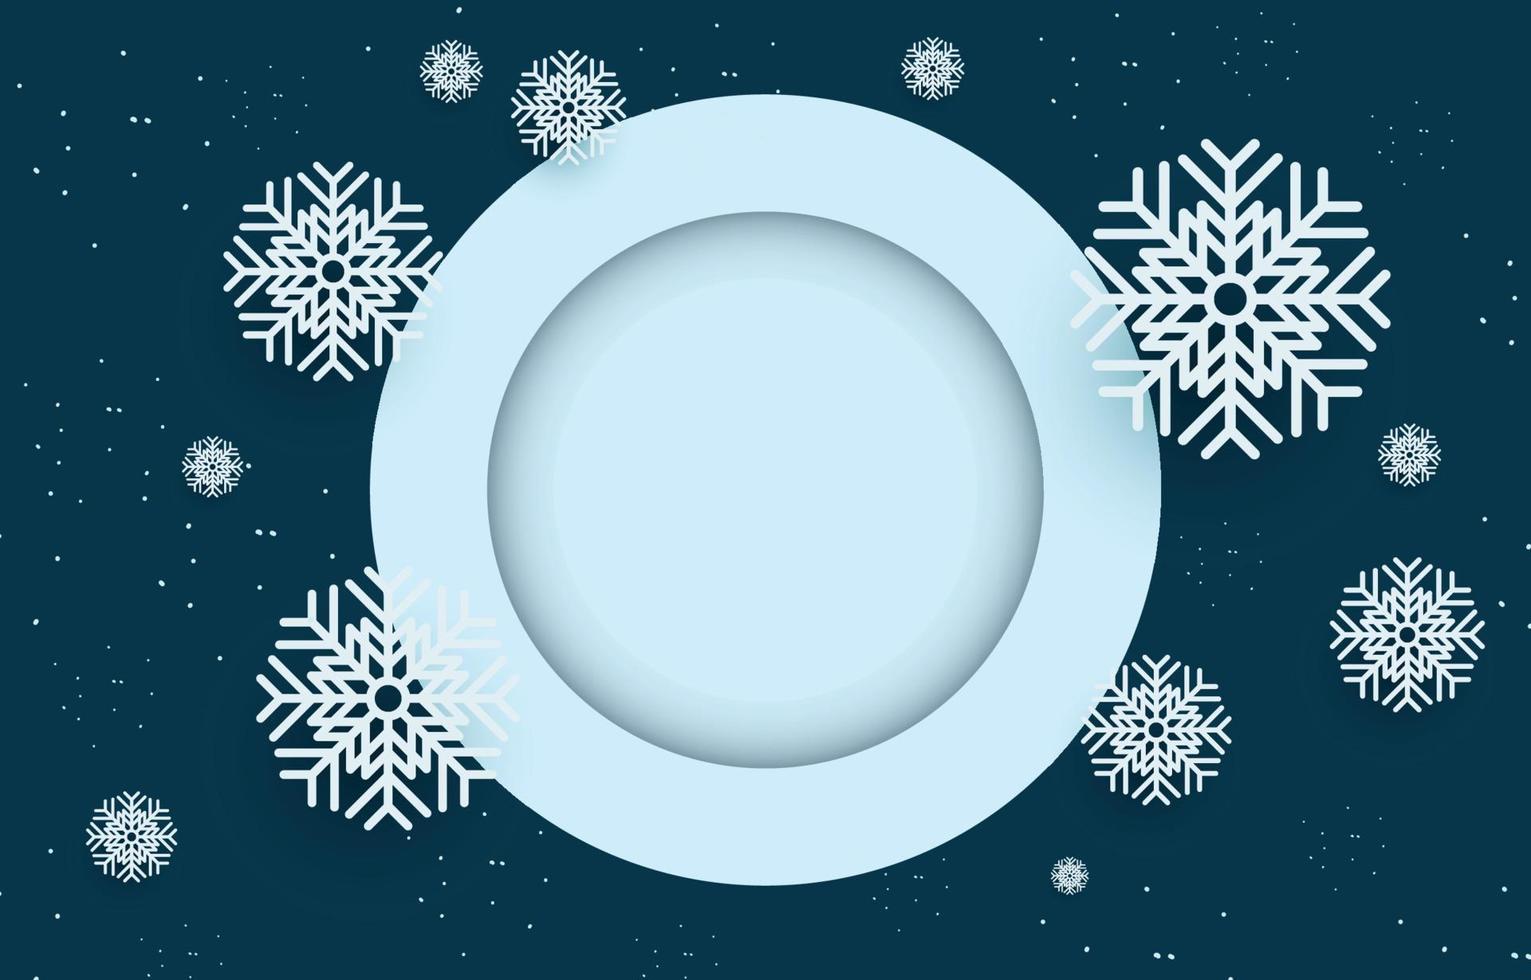 mörk blå bakgrund med tom cirkel ram dekorerad med snöflingor, vektor illustration av vinter- jul och ny år.